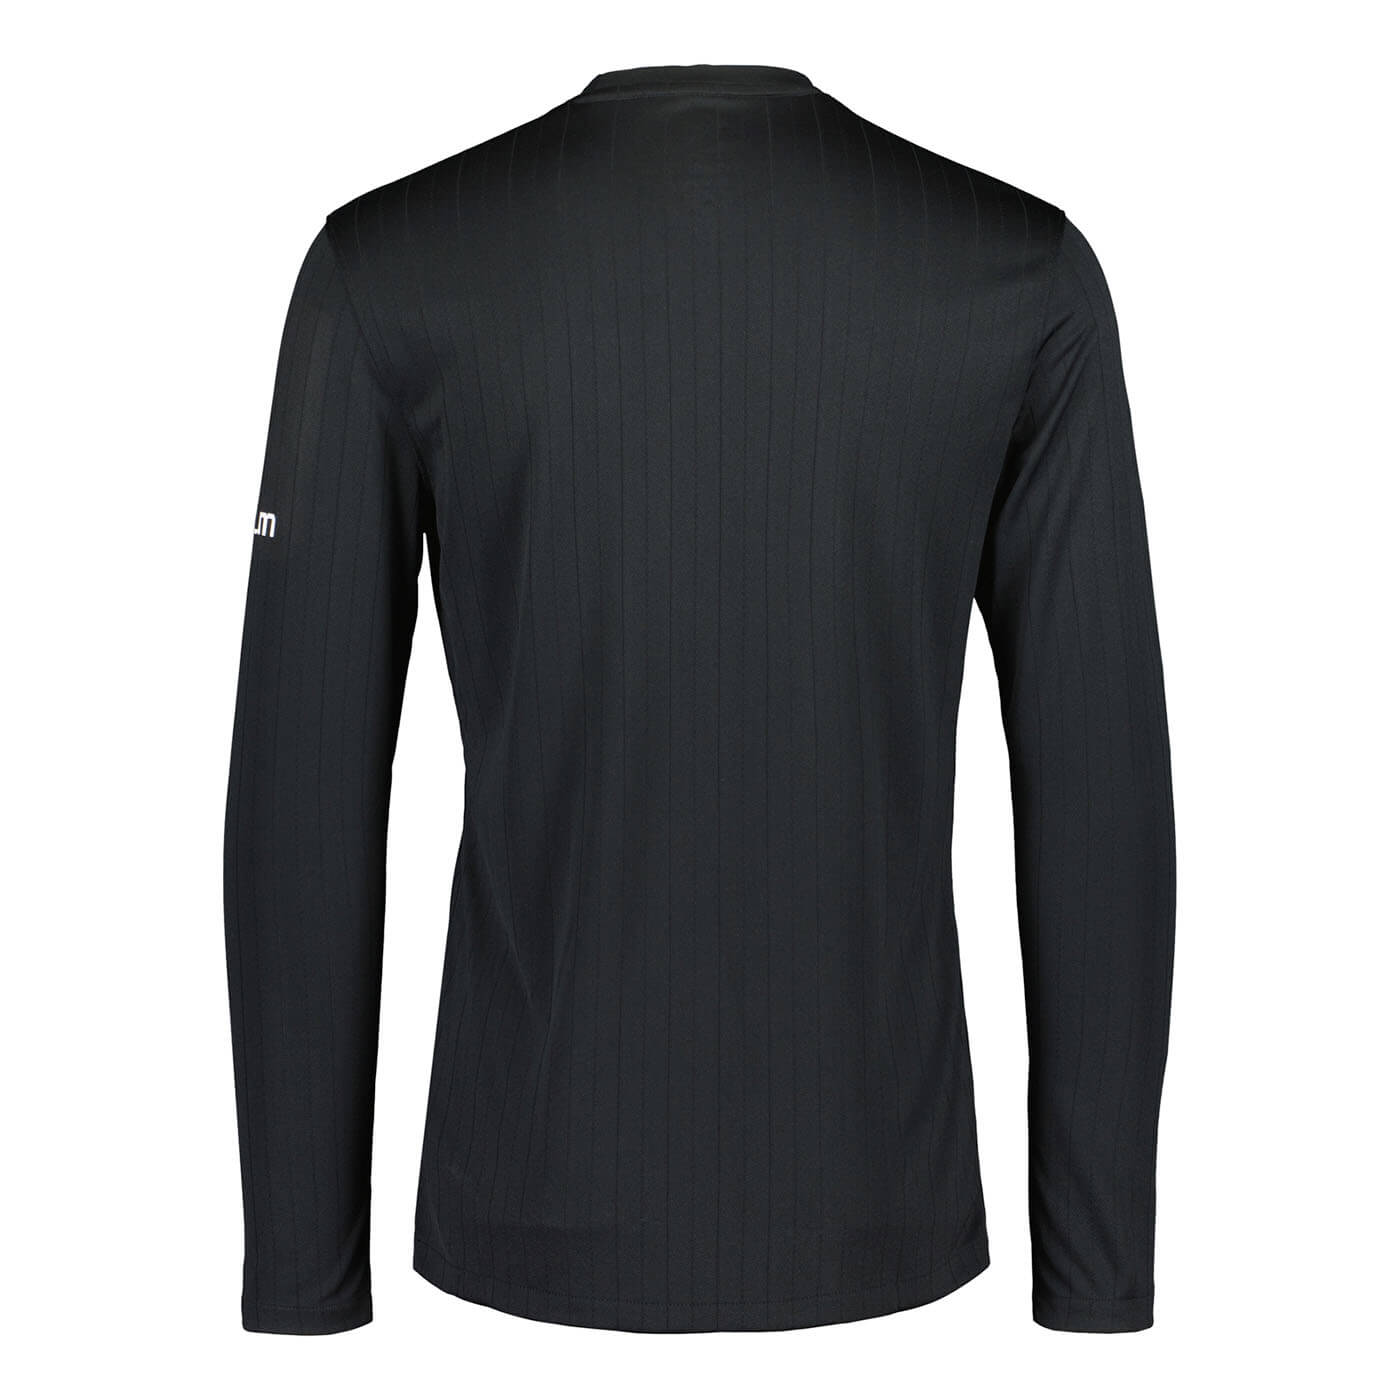 Erotuomarin virallinen pitkähihainen paita + erotuomarinmerkki, Musta